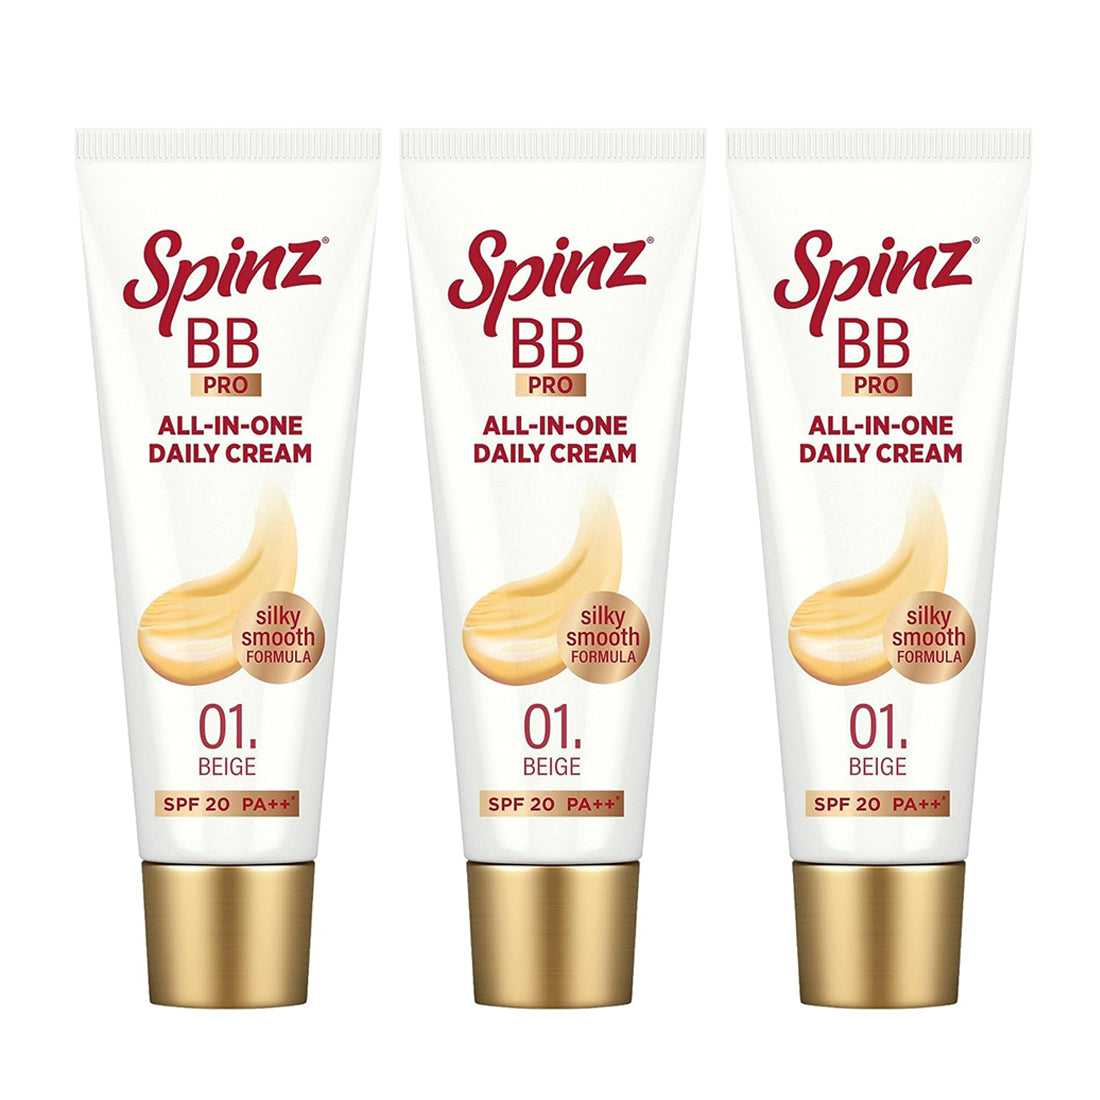 Spinz BB Brightening & Beauty Fairness Cream 29gm Pack Of 3